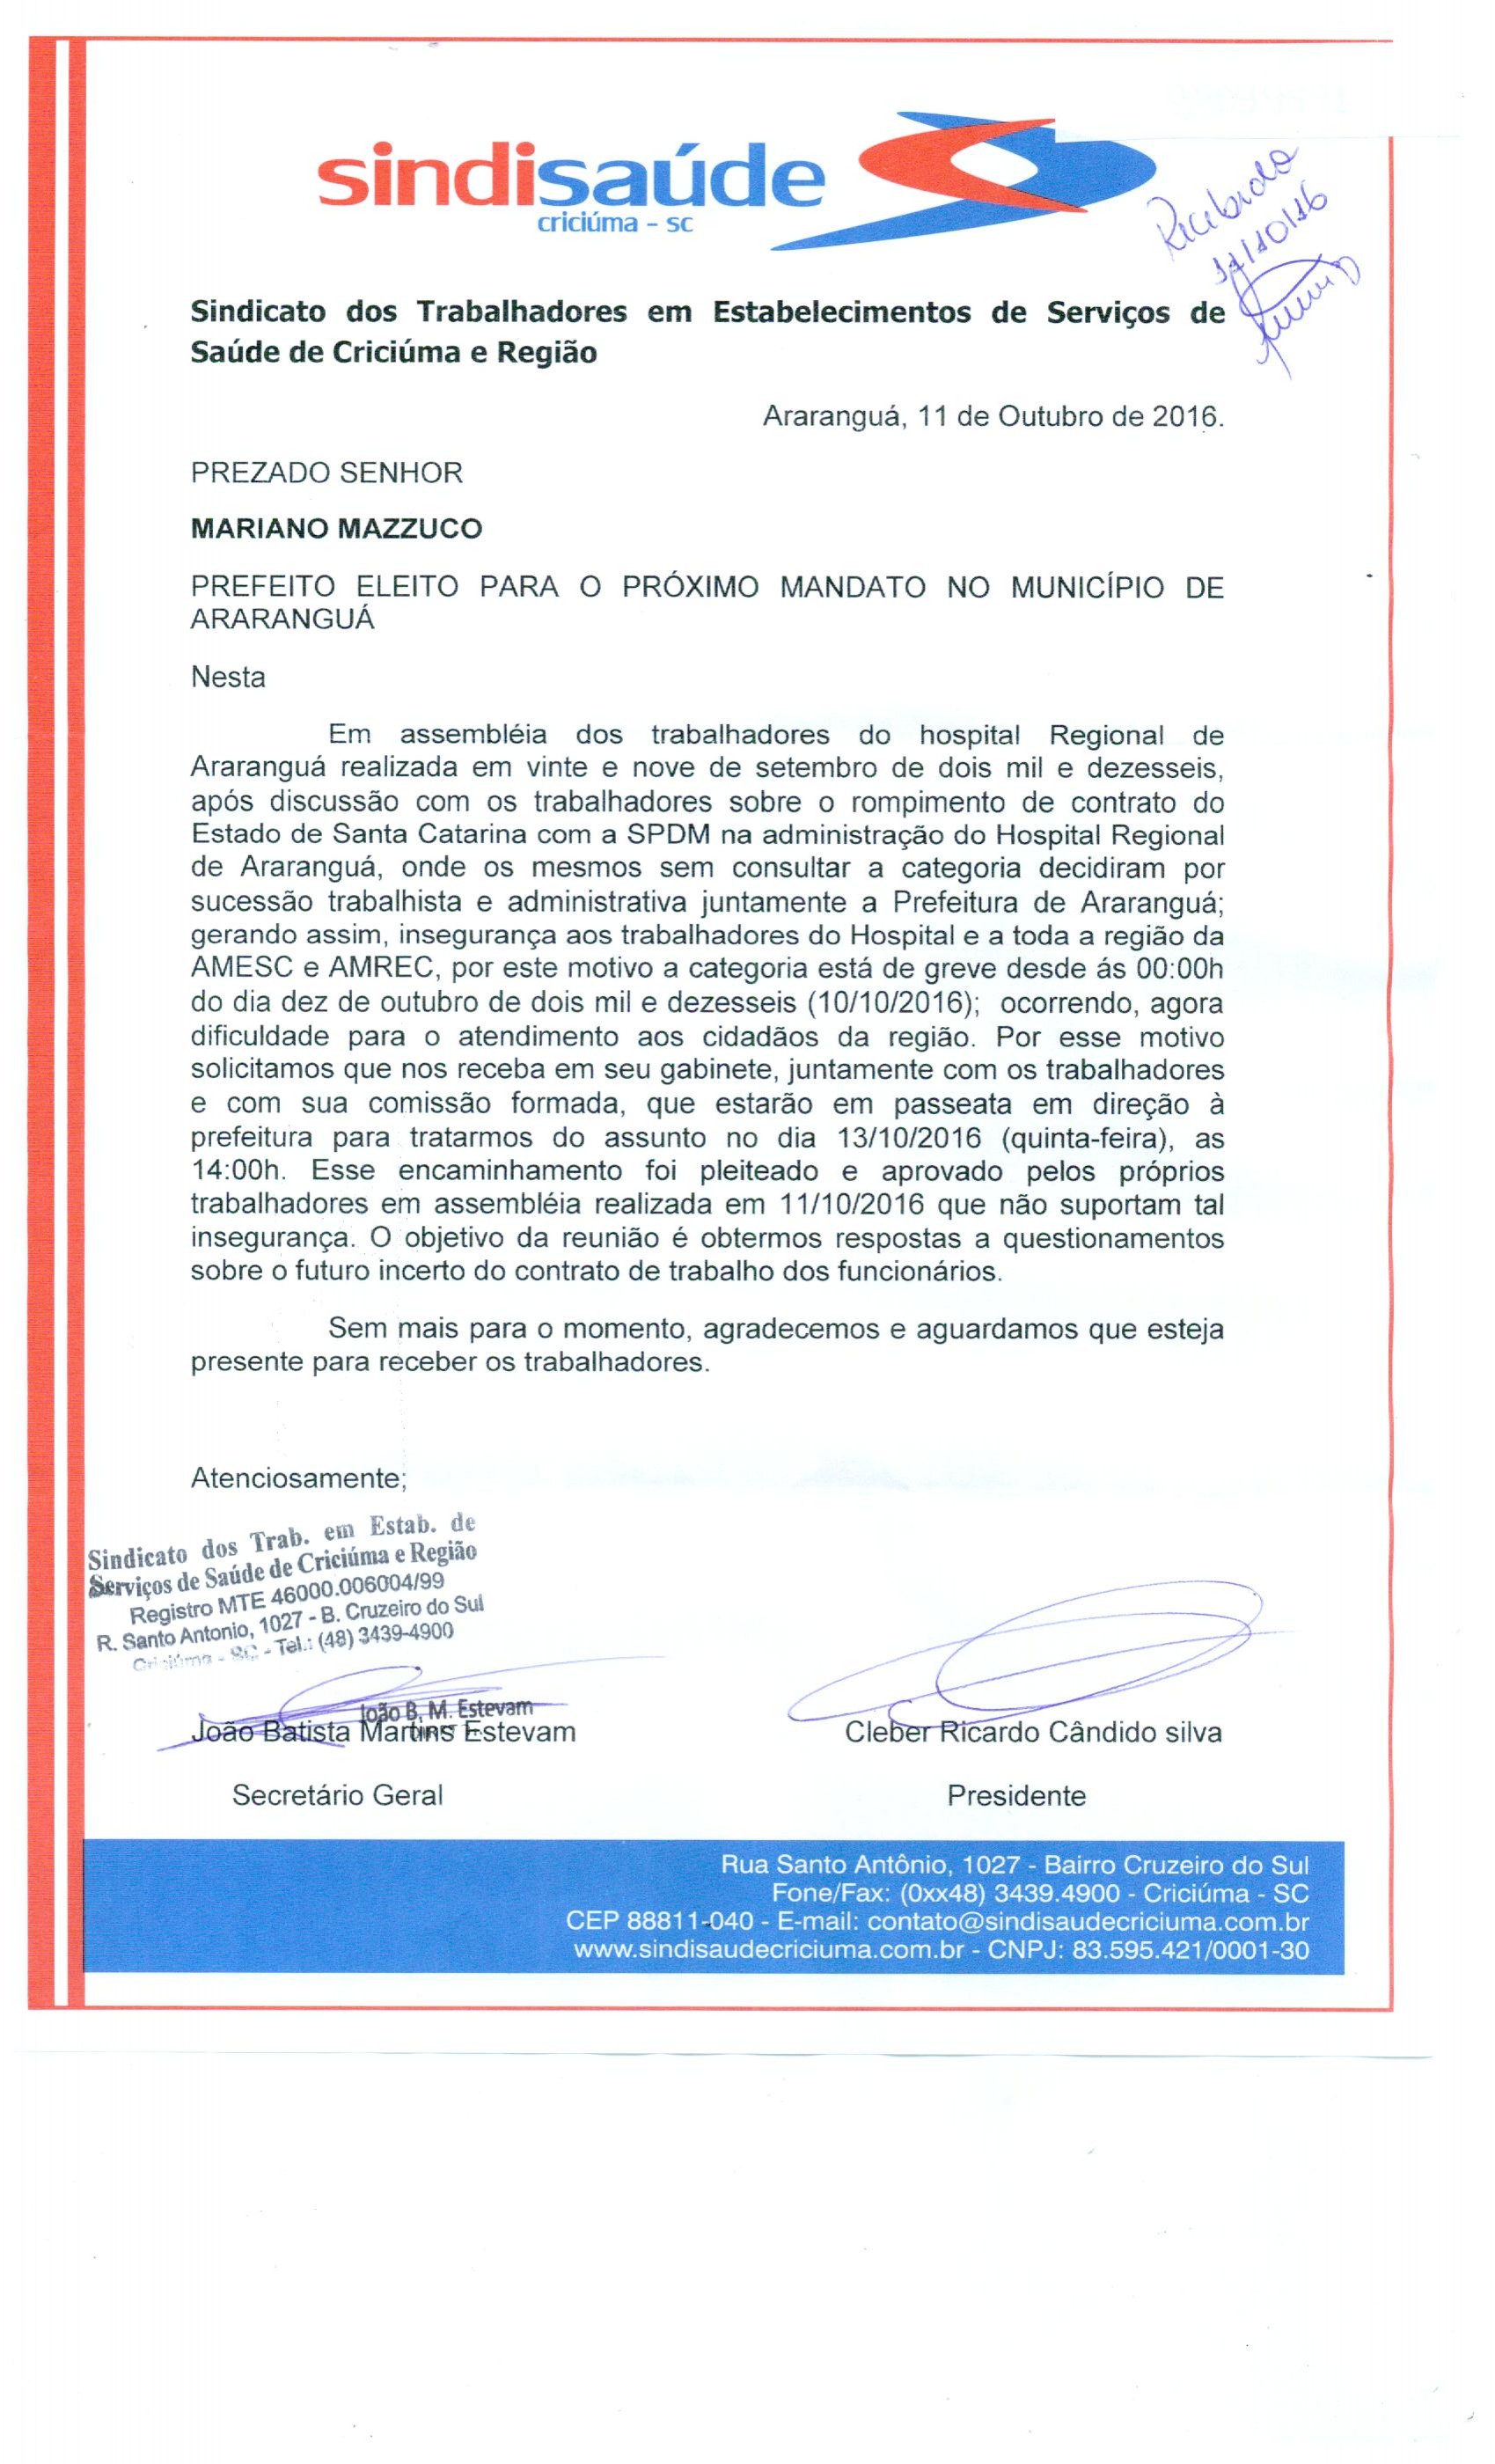 Ofício encaminhado para Mariano Mazzuco - Prefeito eleito de Araranguá